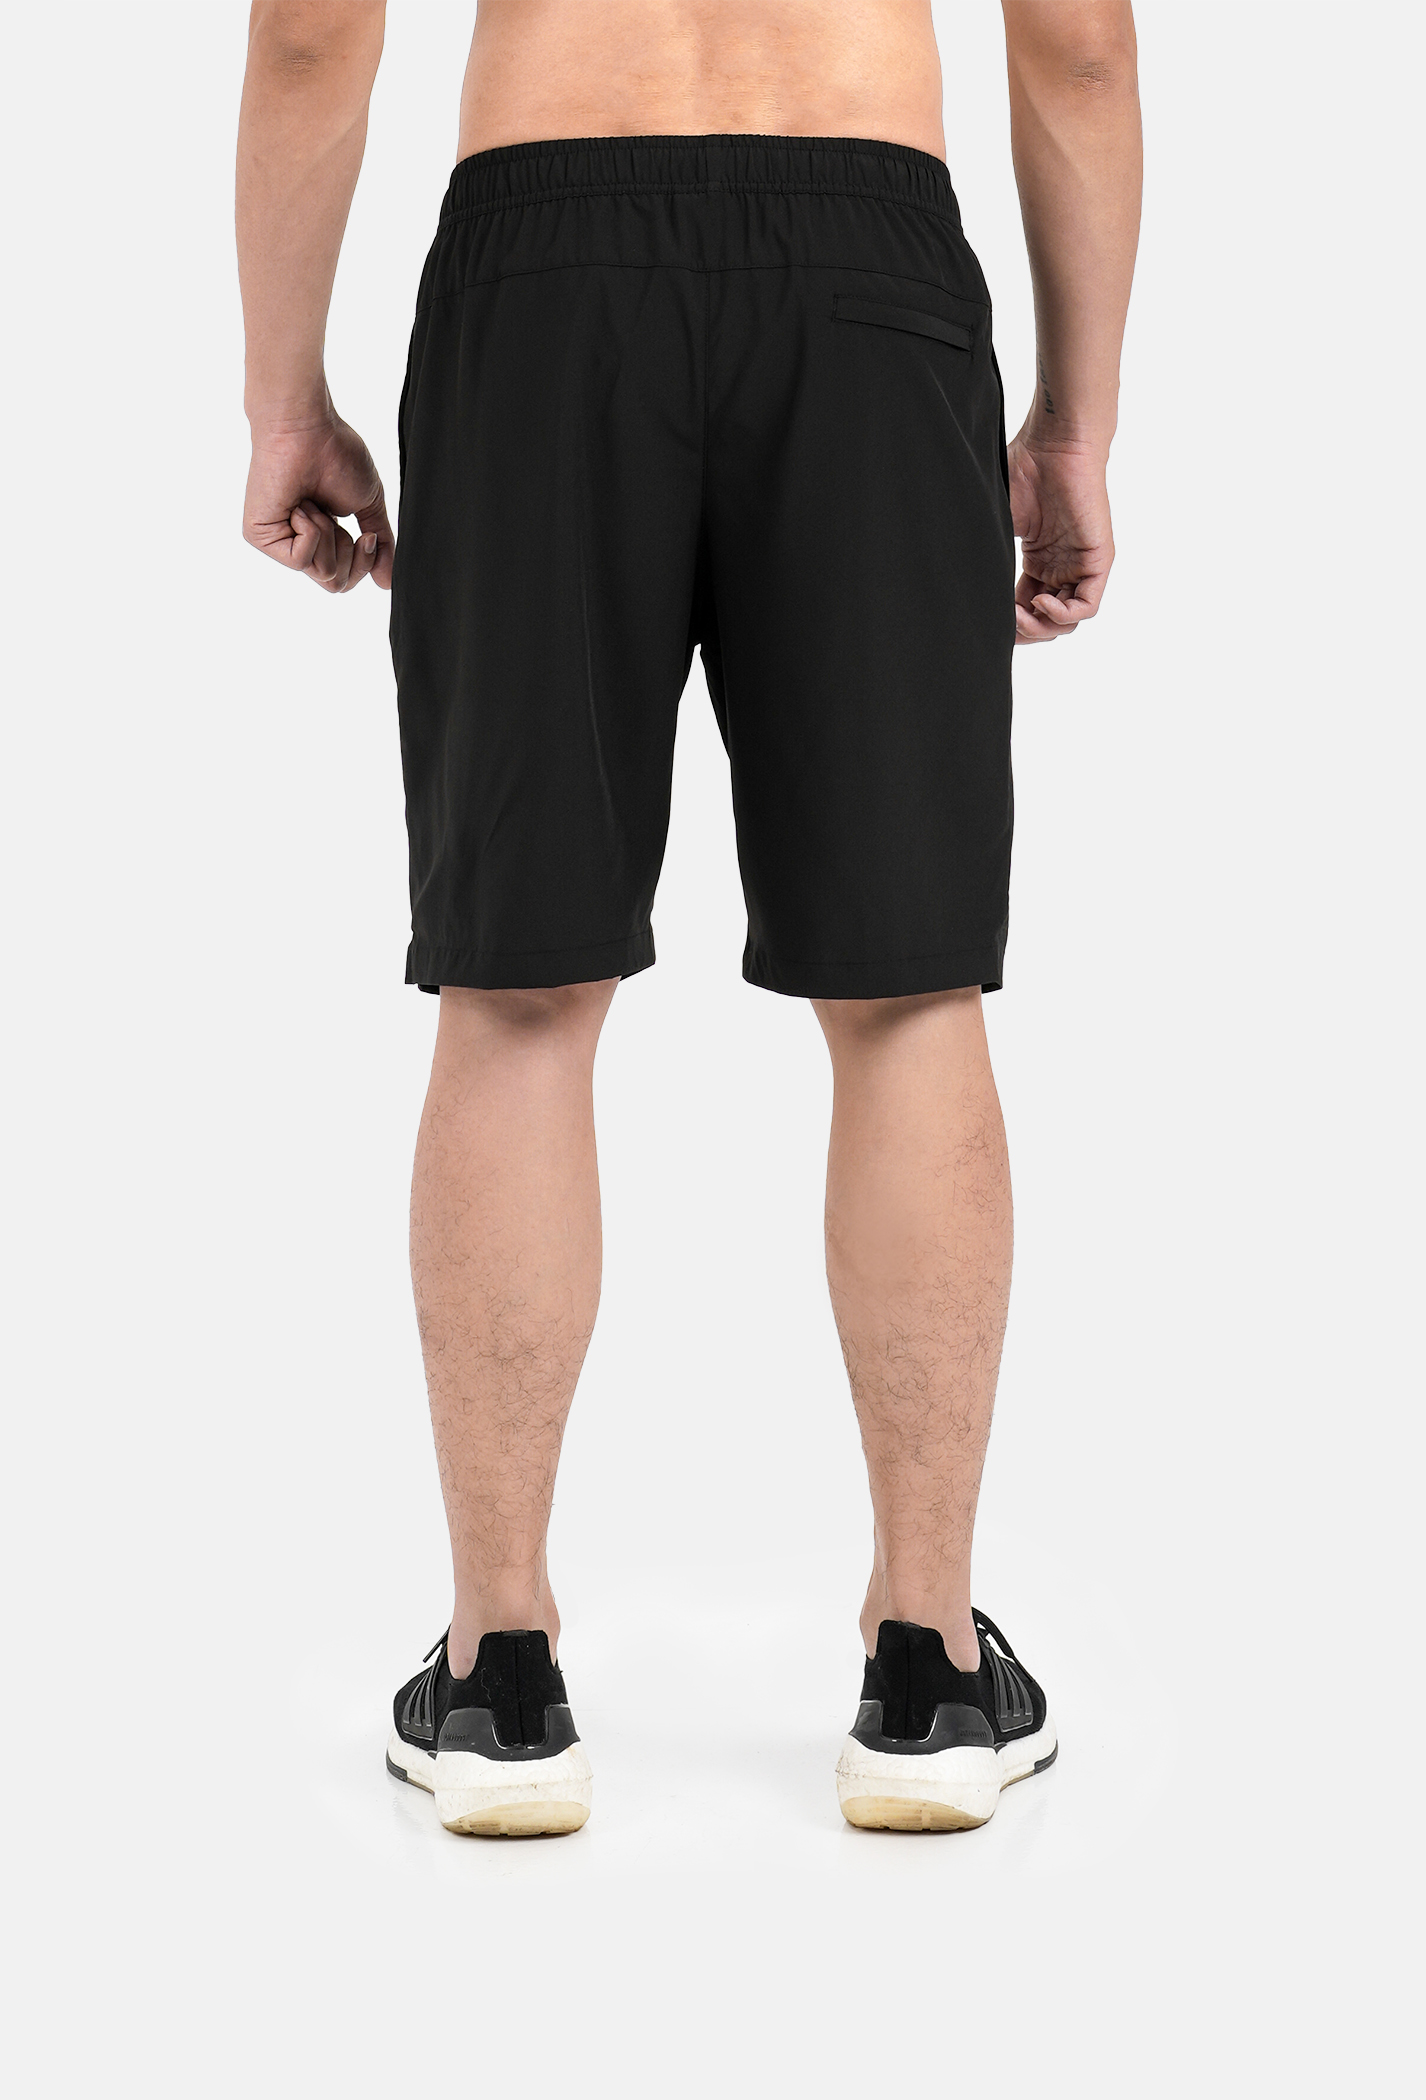 Quần thể thao nam Max Ultra Shorts (có thêm túi khoá sau)  1